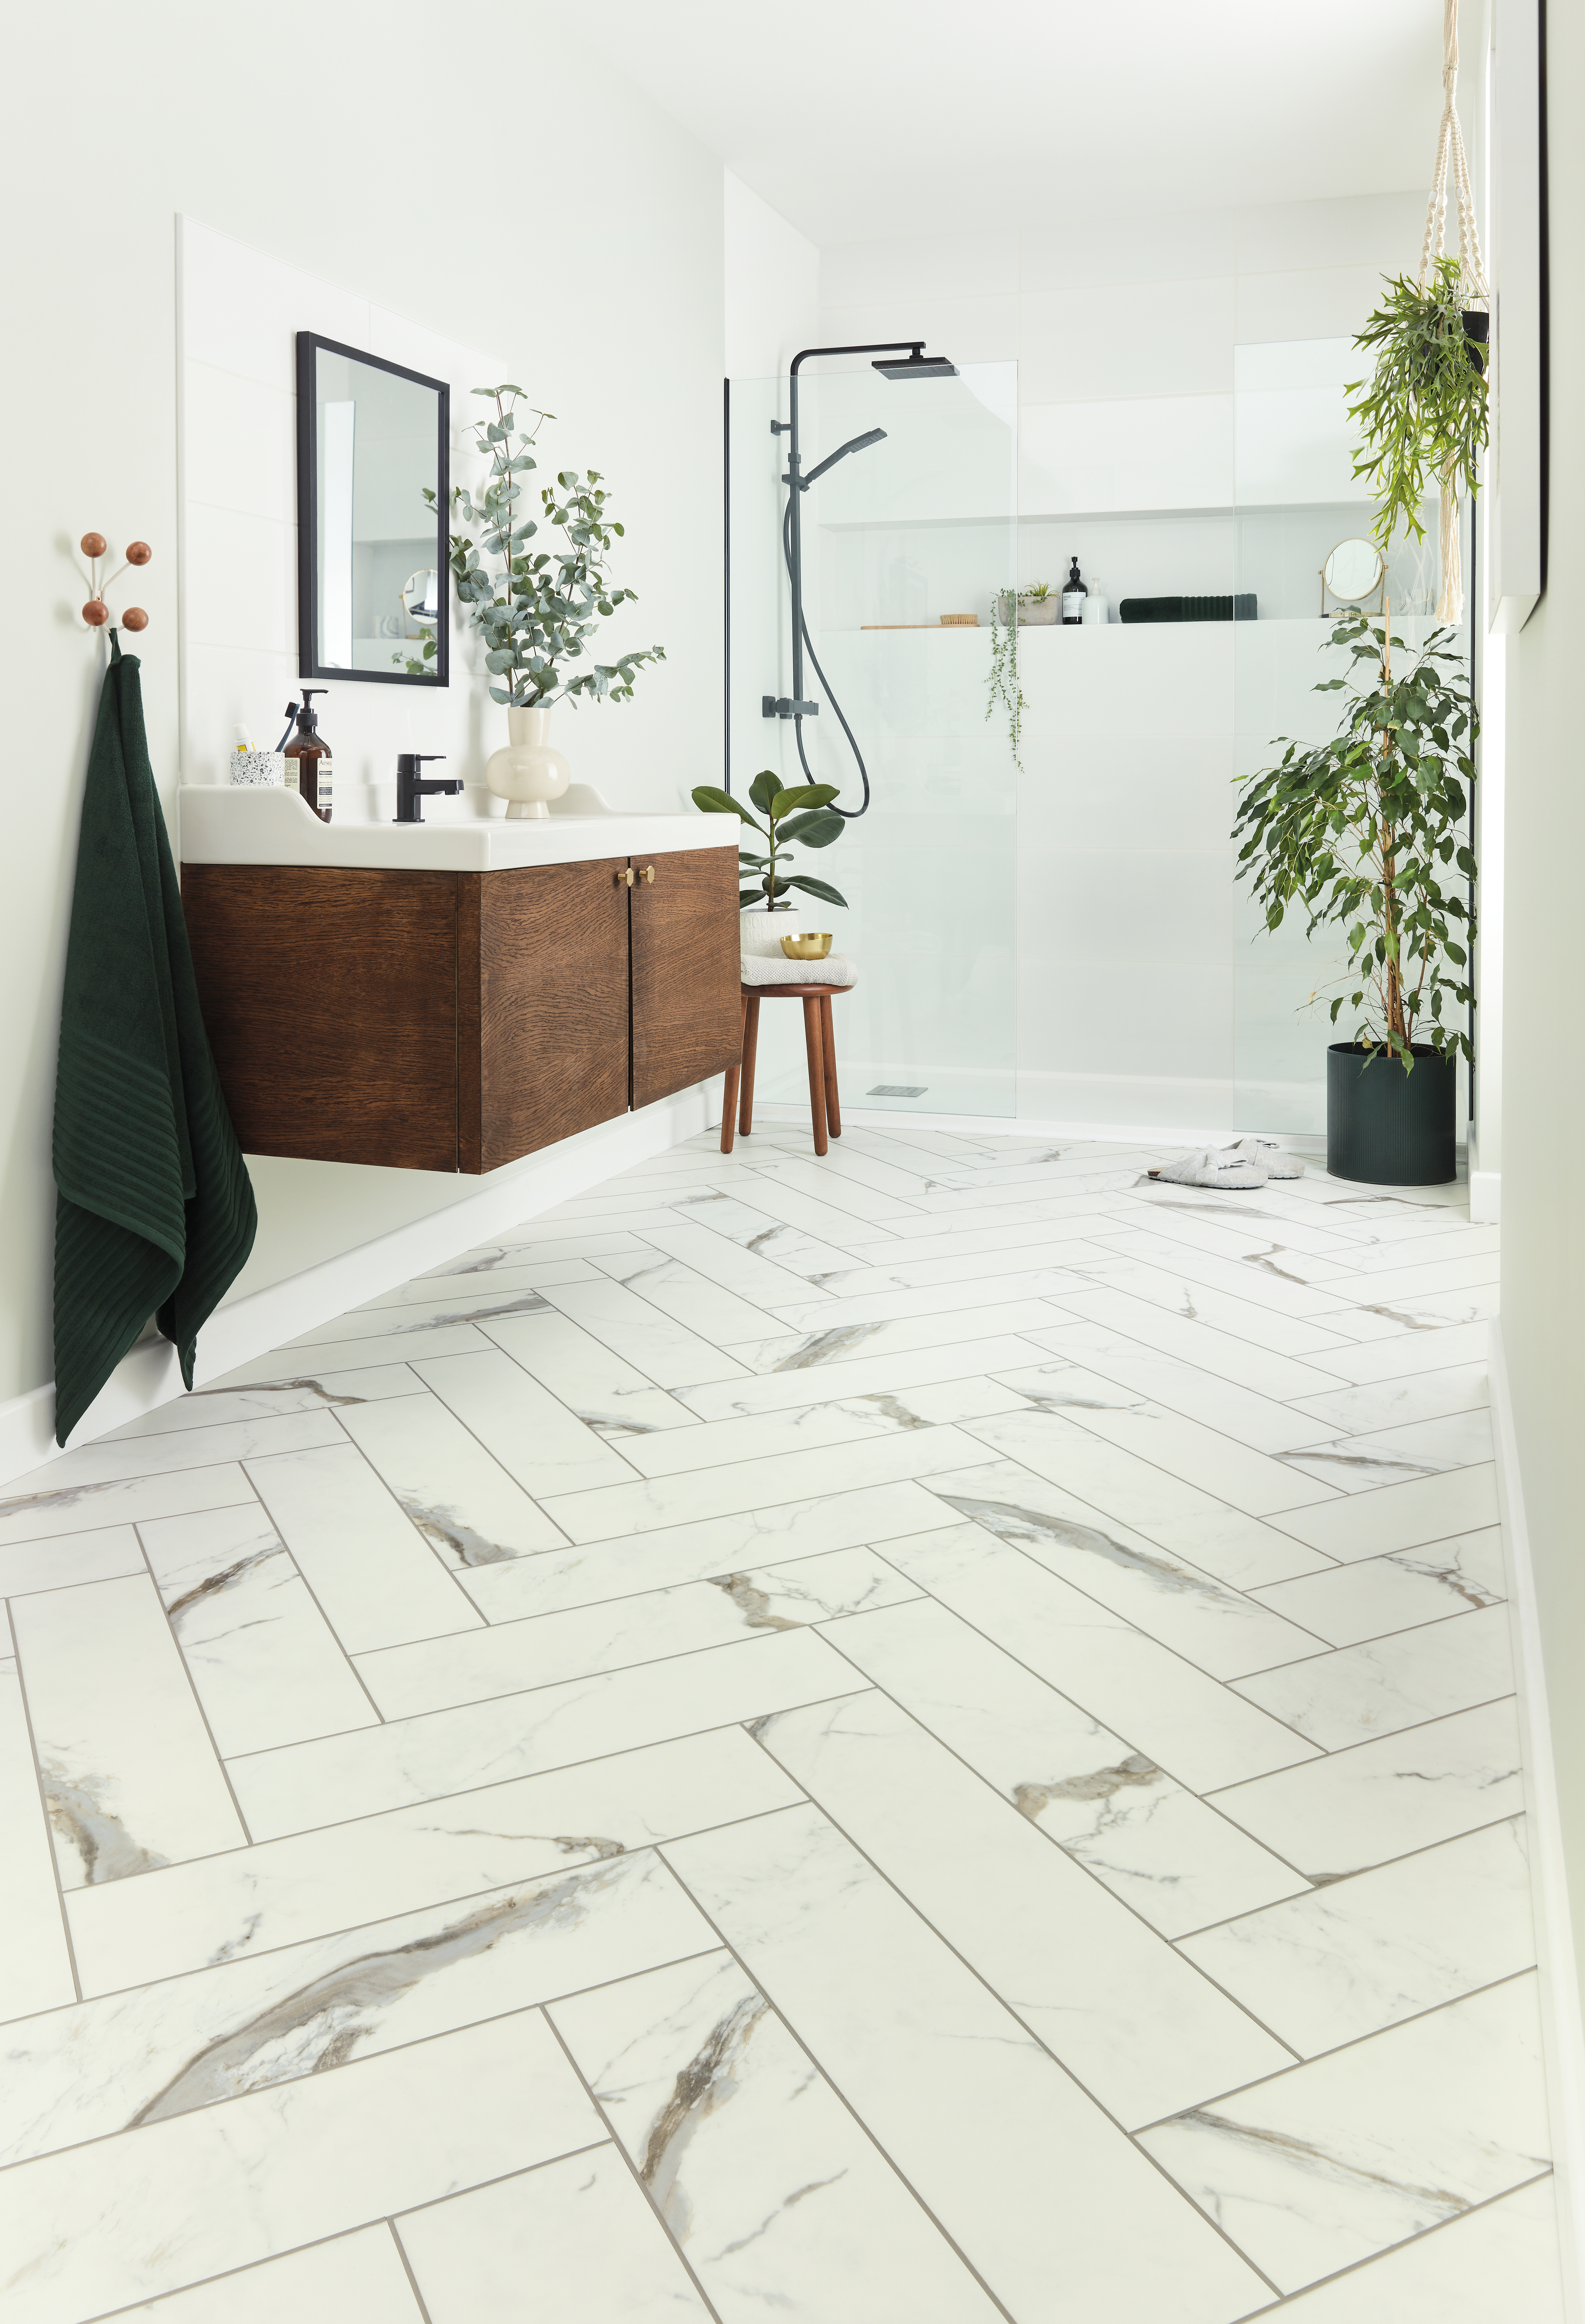 image of herringbone floor tiles in white marble